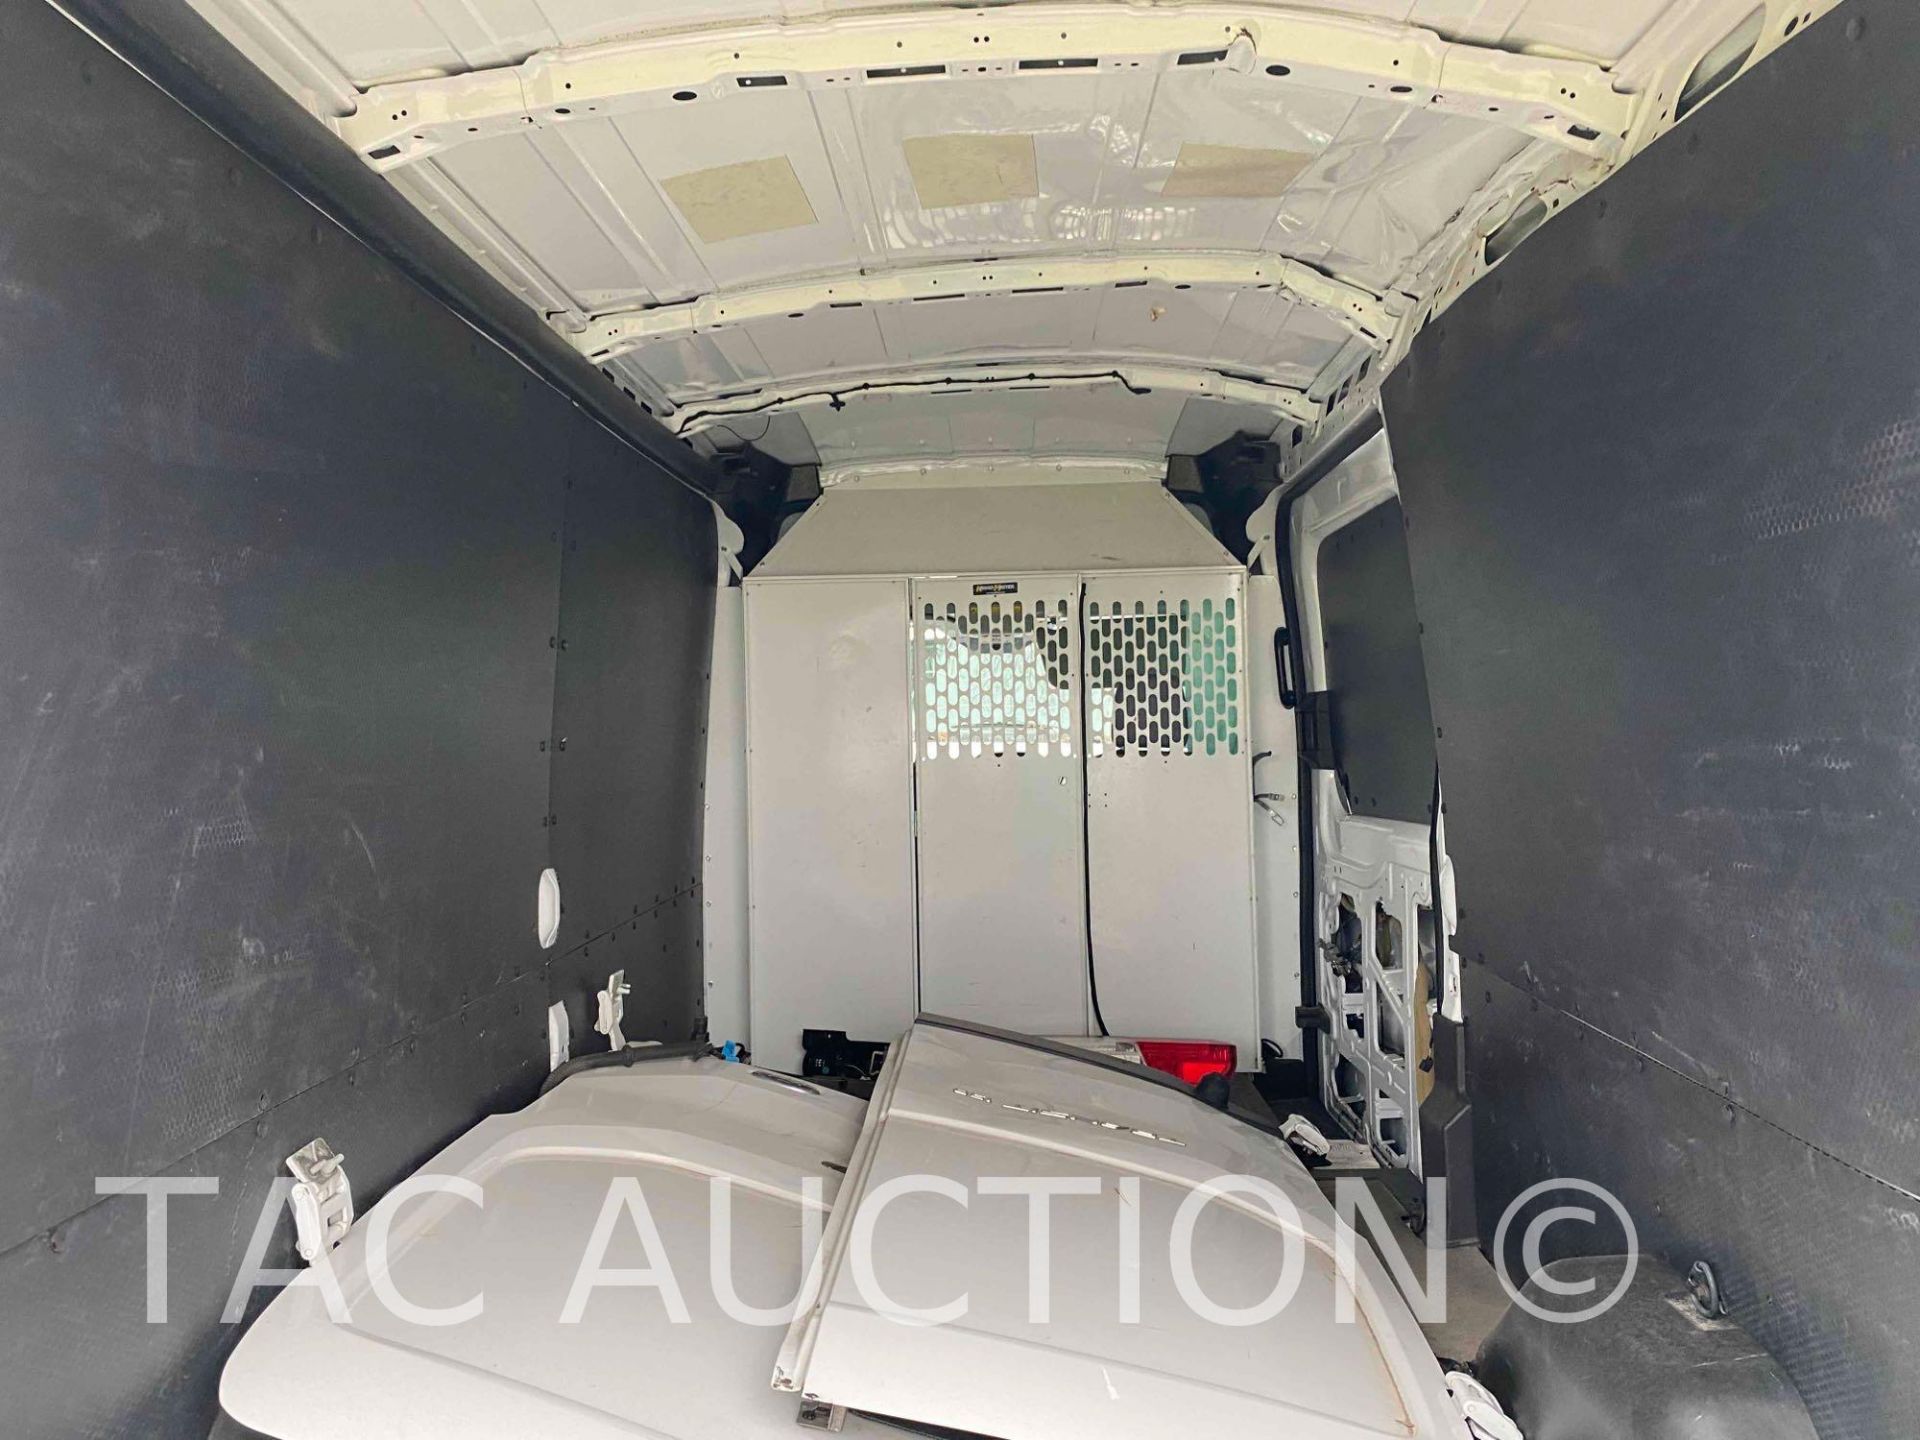 2019 Ford Transit 150 Cargo Van - Image 7 of 35